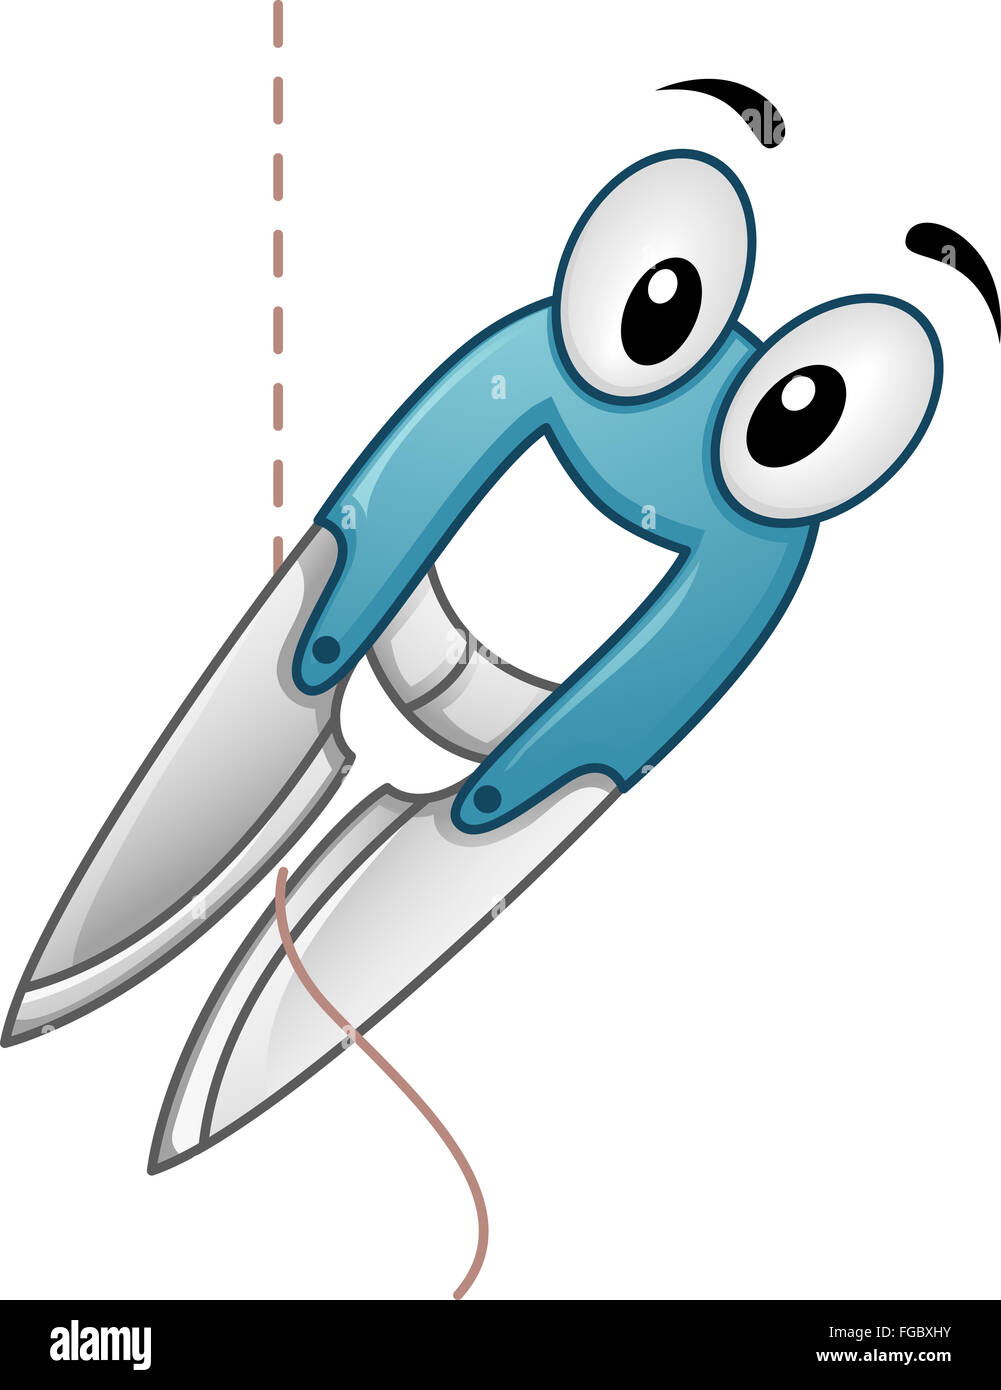 Il Mascot illustrazione di un dispositivo di taglio il taglio di una stringa di filo Foto Stock